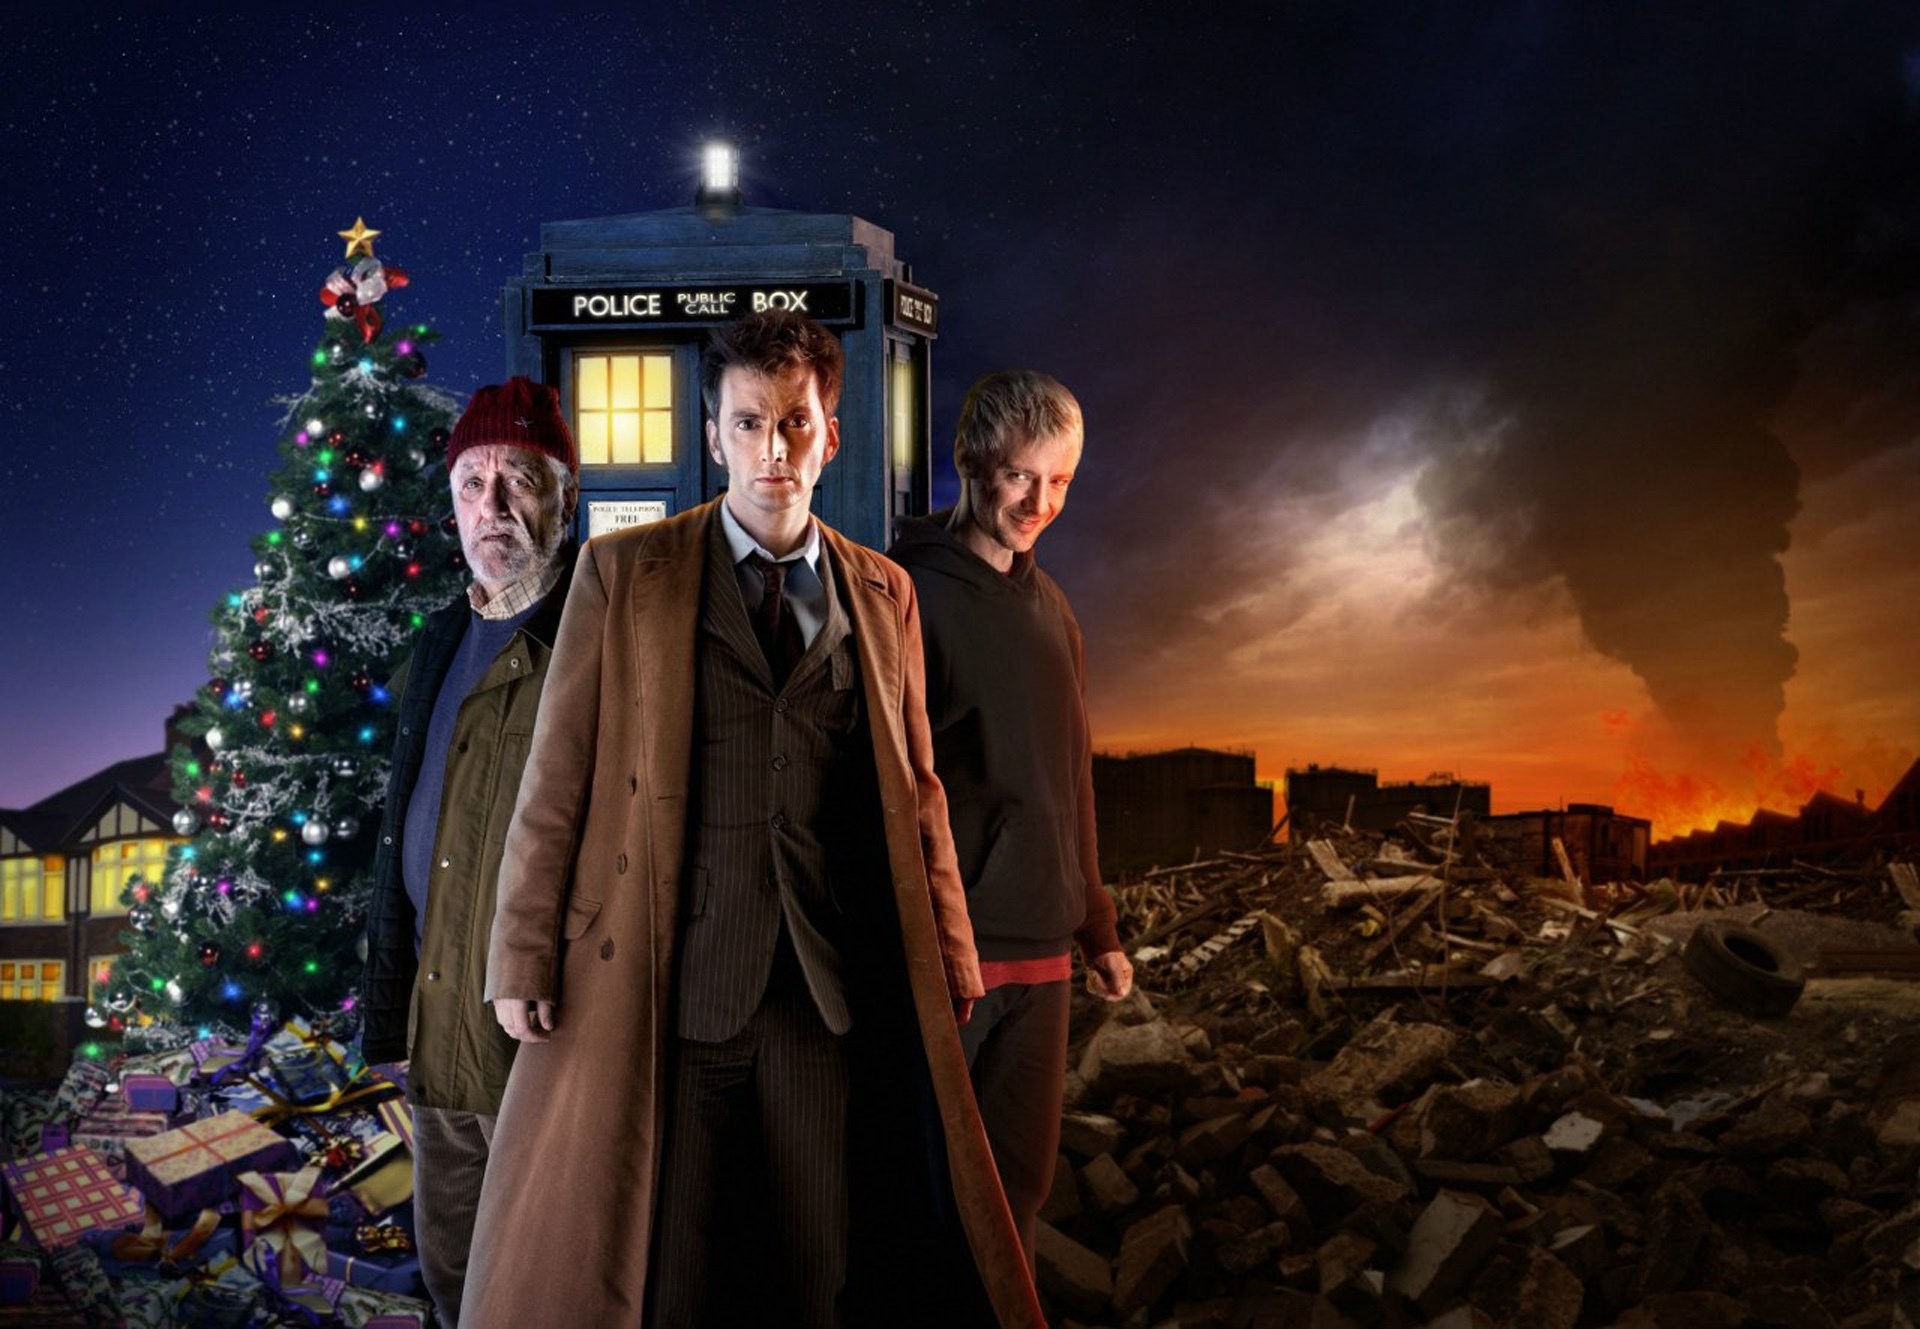 Doctor who doctor who david tennant david tennant tenth doctor tenth doctor john simm john simm